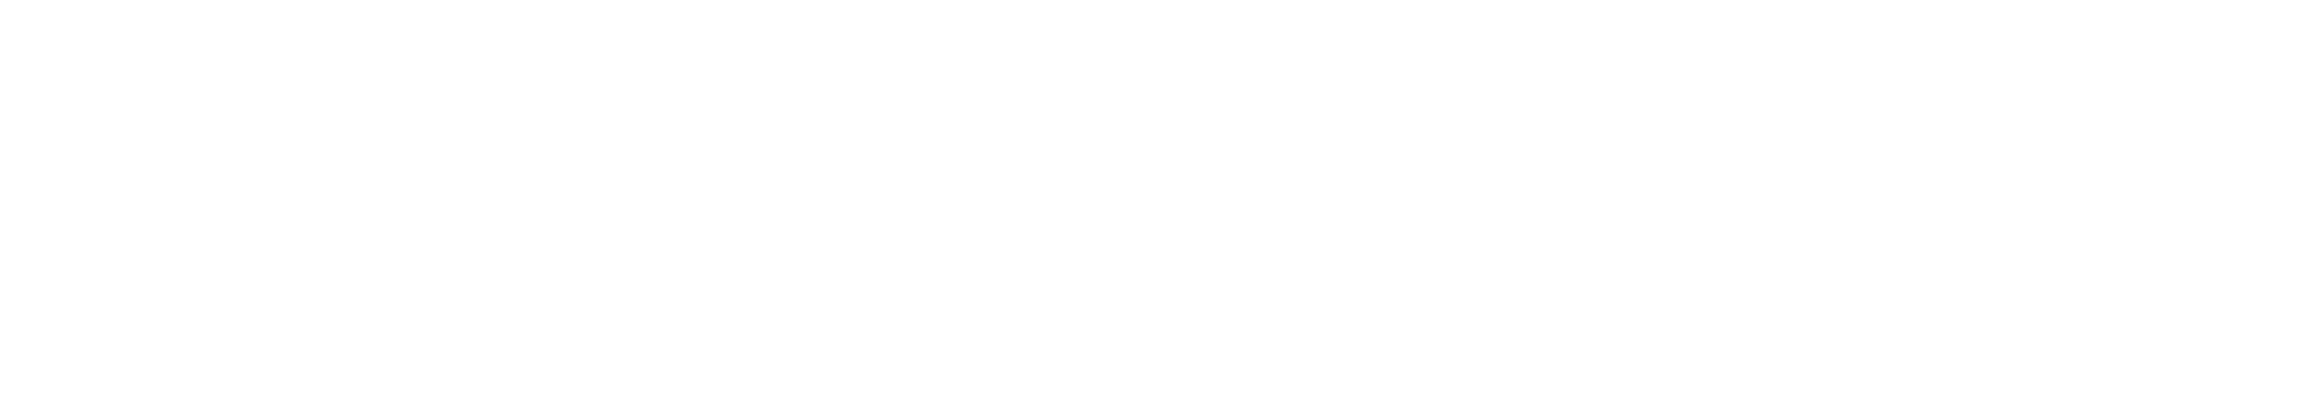 Harbor Group Management logo for Azalea Springs